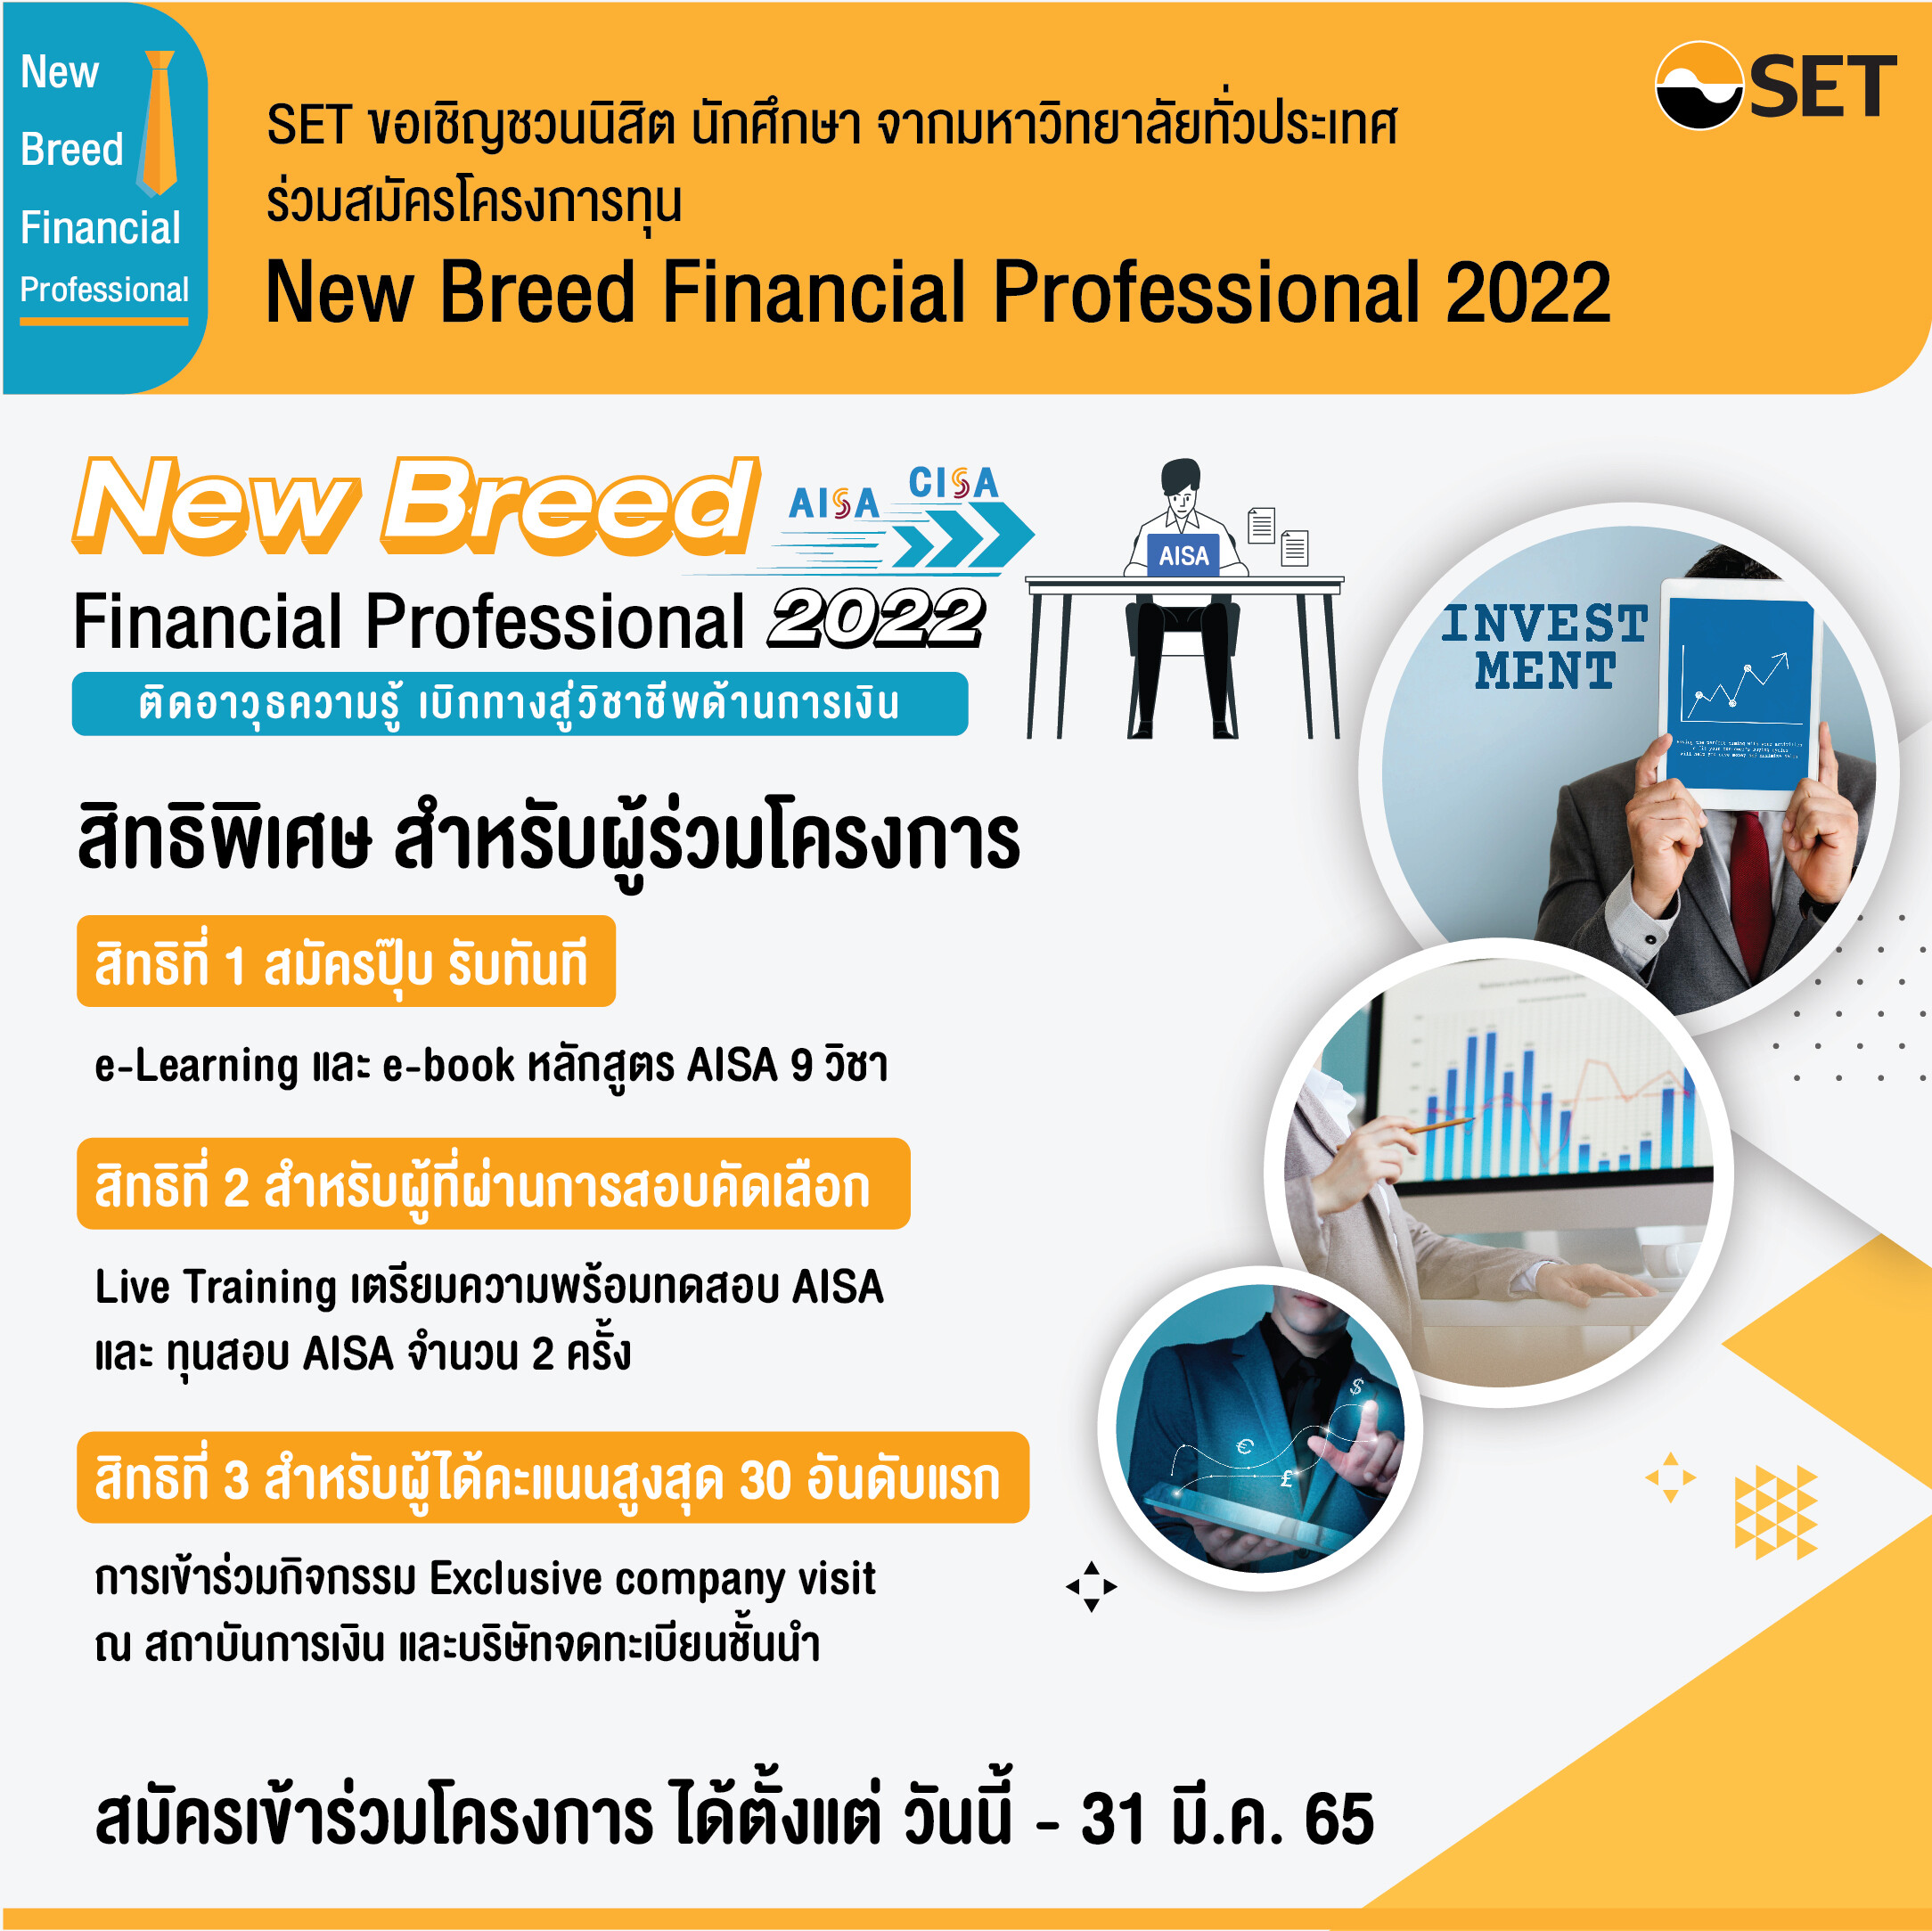 ตลาดหลักทรัพย์ฯ ชวนนิสิตนักศึกษาร่วมโครงการ "New Breed Financial Professional 2022"